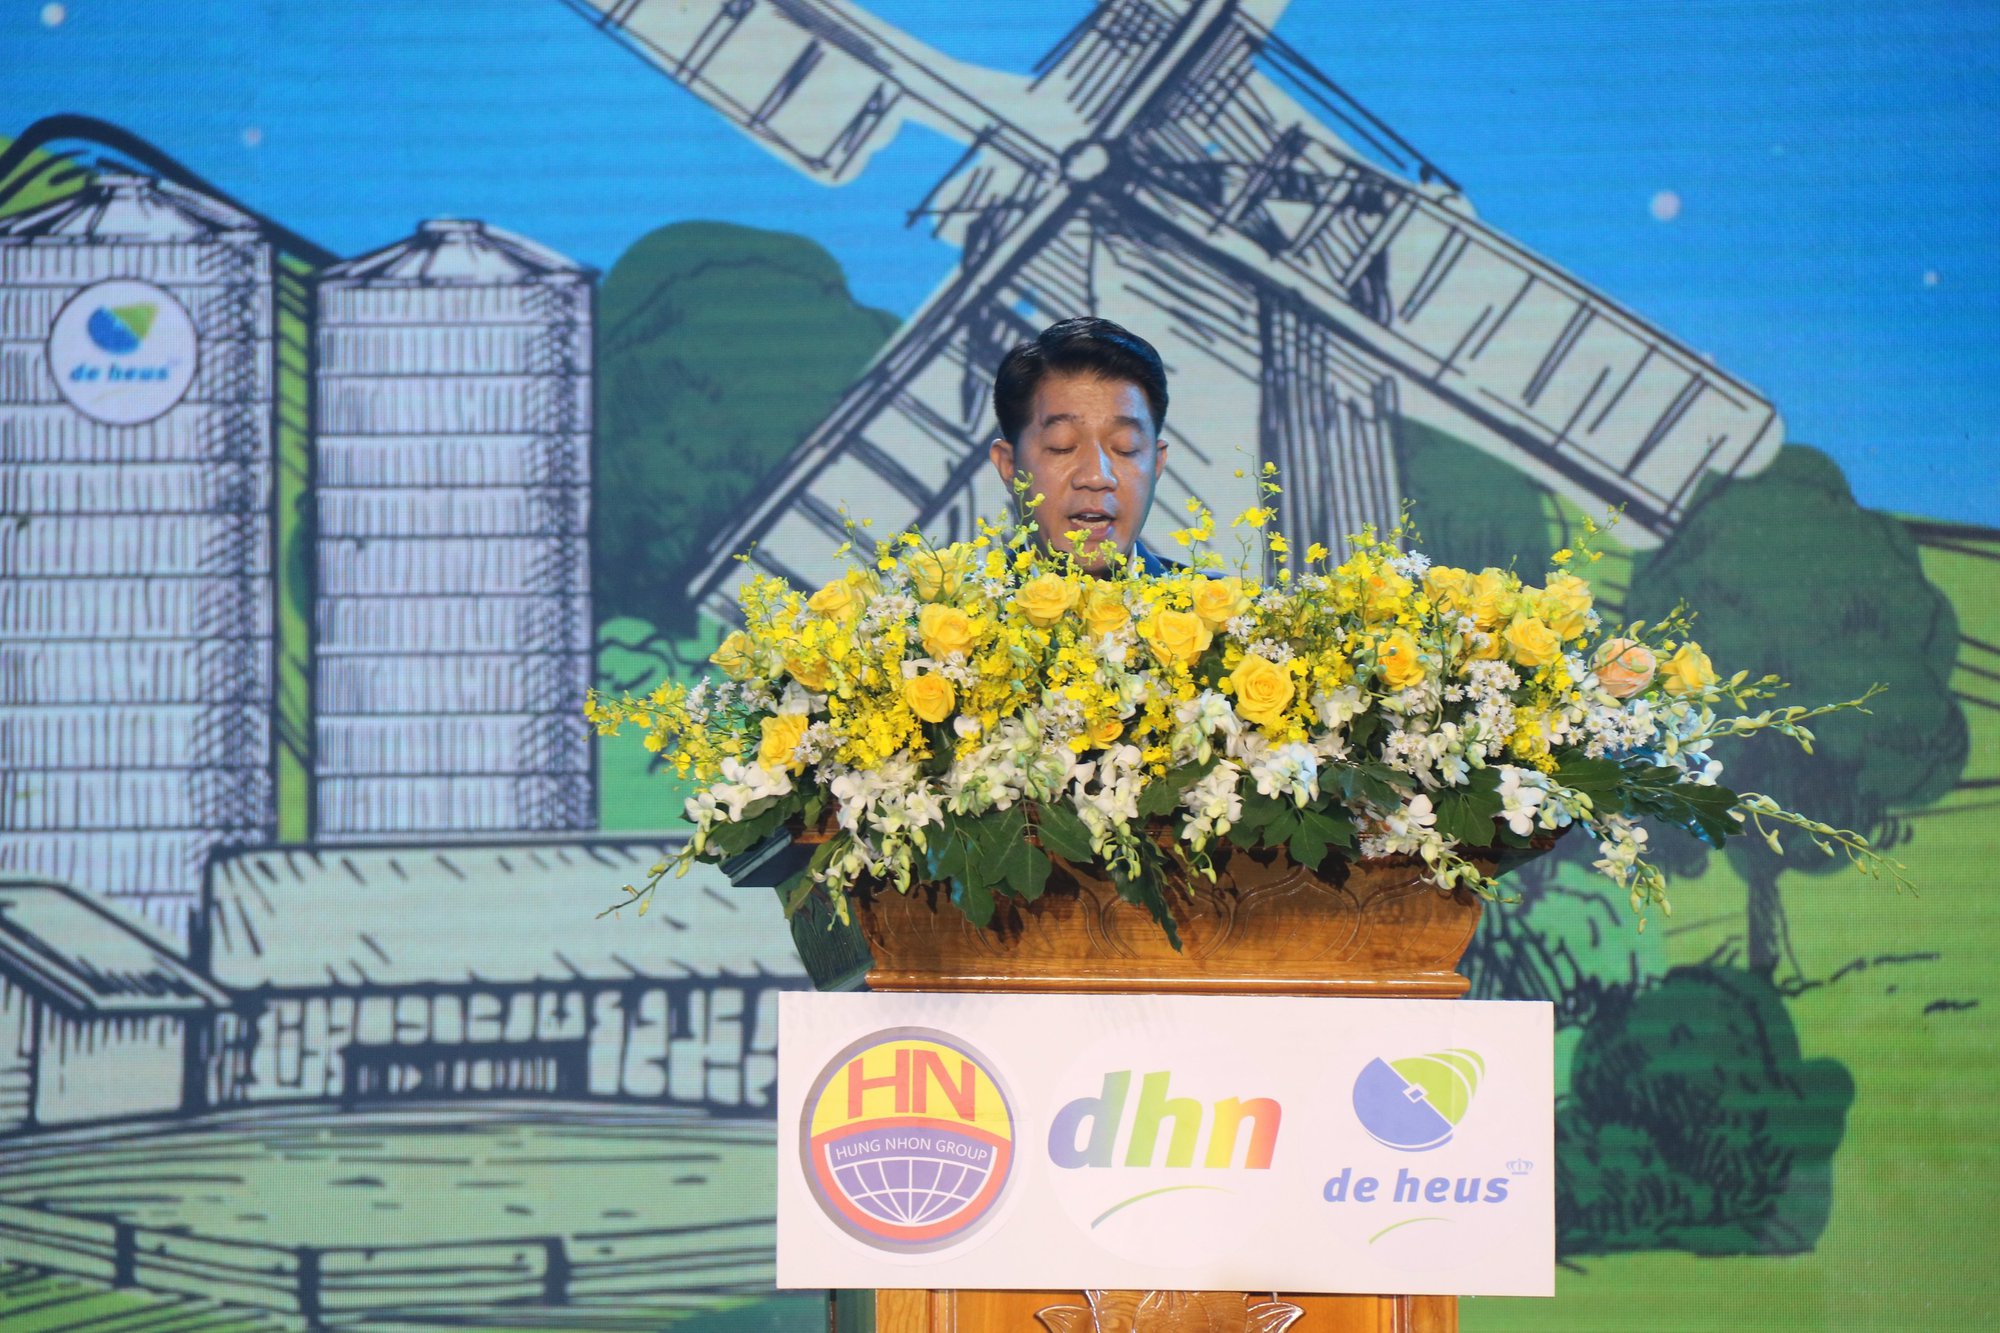 Ông Vũ Mạnh Hùng, Chủ tịch HĐQT, kiêm Tổng Giám đốc Tập đoàn Hùng Nhơn phát biểu tại buổi lễ.